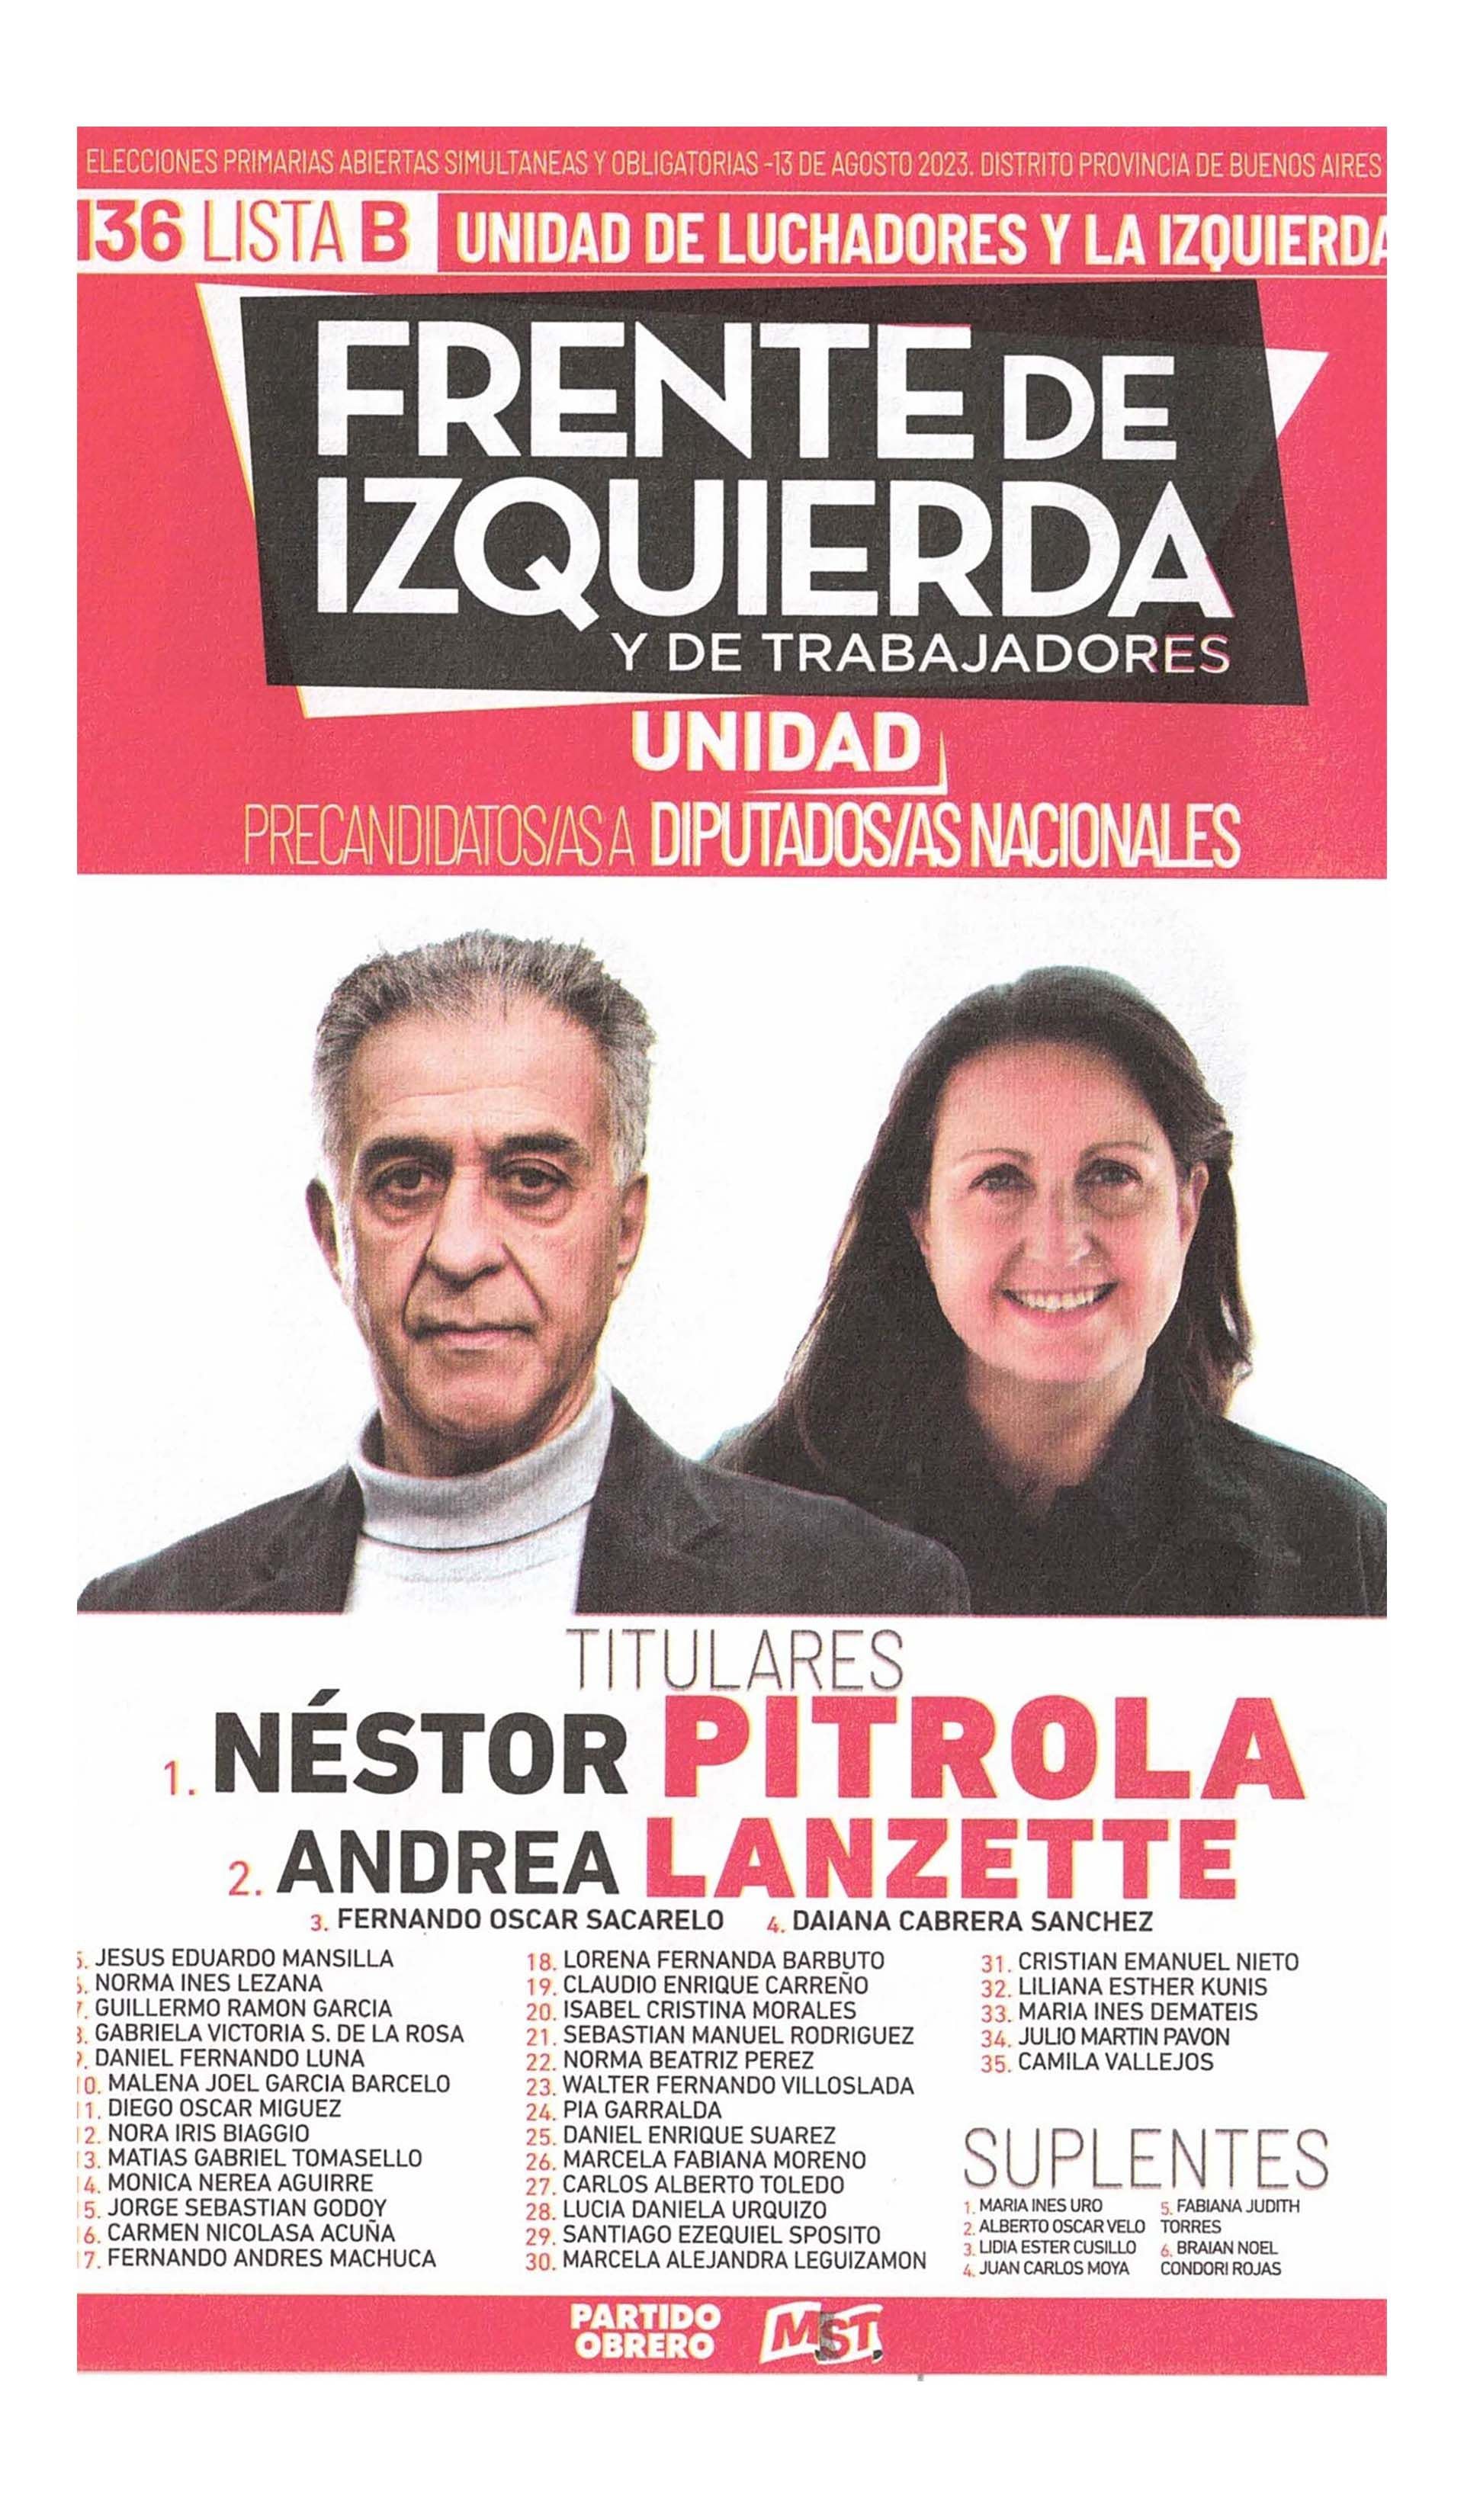 La boleta oficial de Néstor Pitrola de precandidatos a diputados nacionales de Buenos Aires